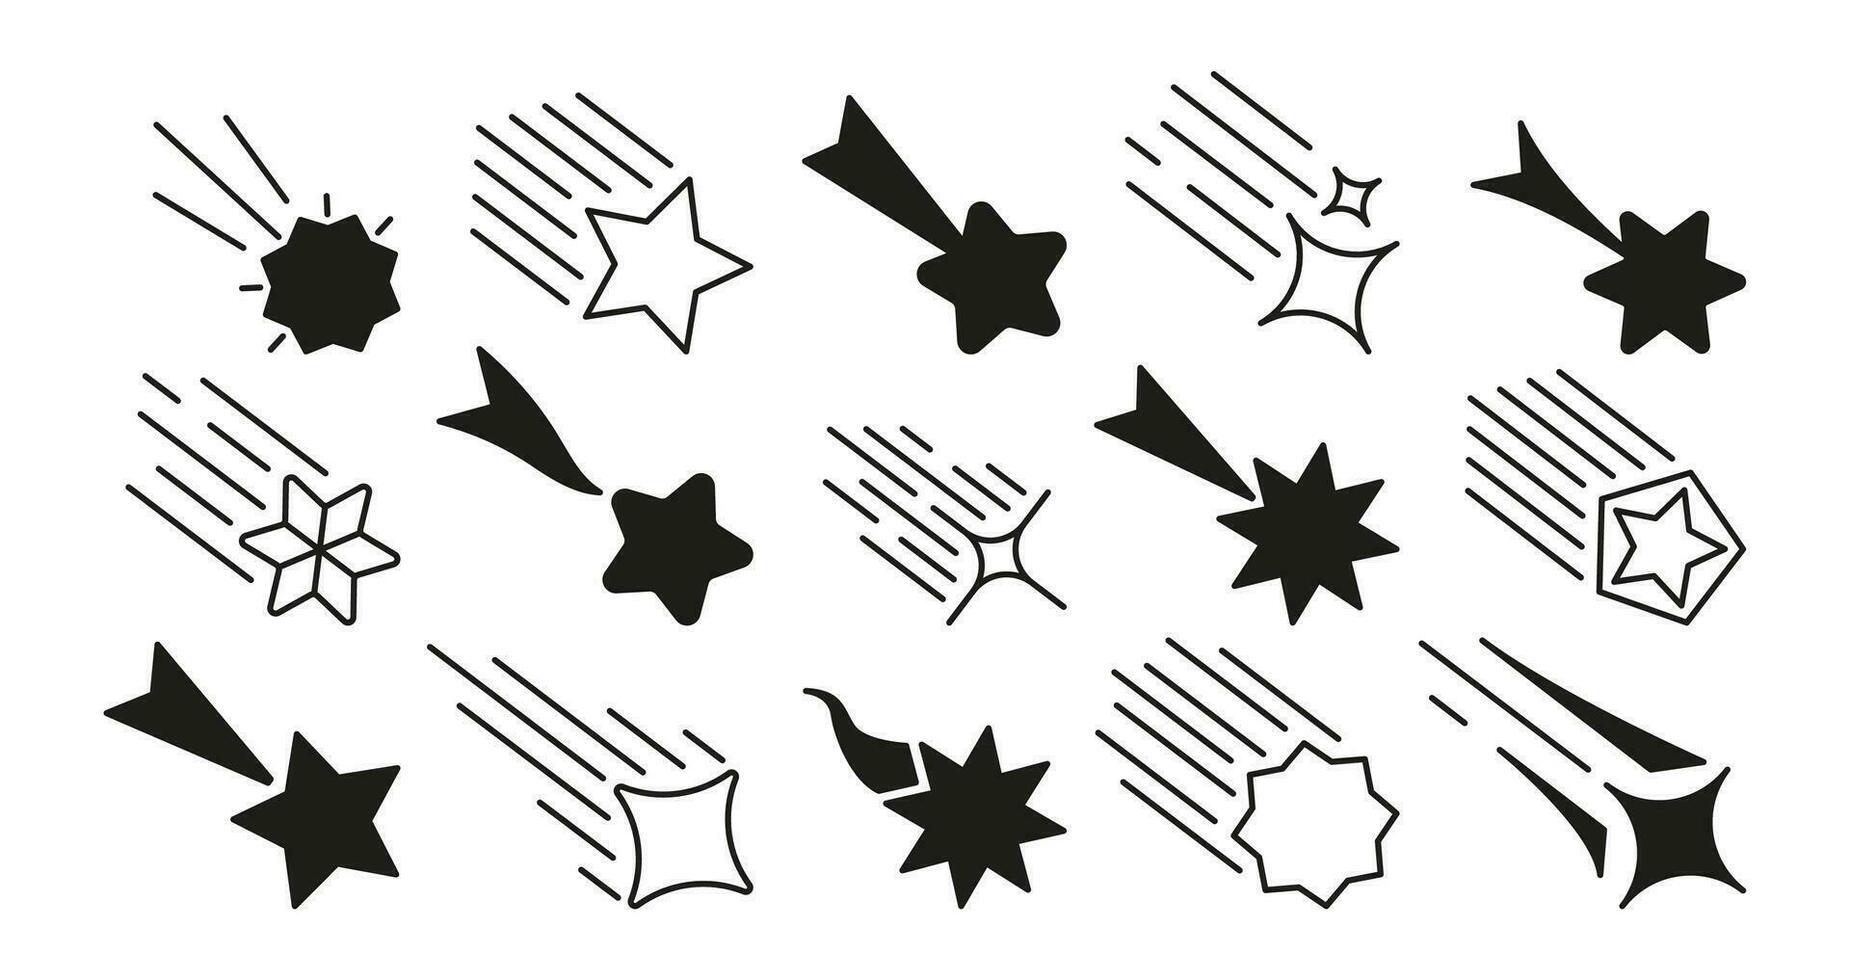 tiroteio Estrela ícones. abstrato queda símbolos com brilhar trilha, conjunto do cometa meteorito silhuetas diferente formas simples Projeto. vetor isolado coleção